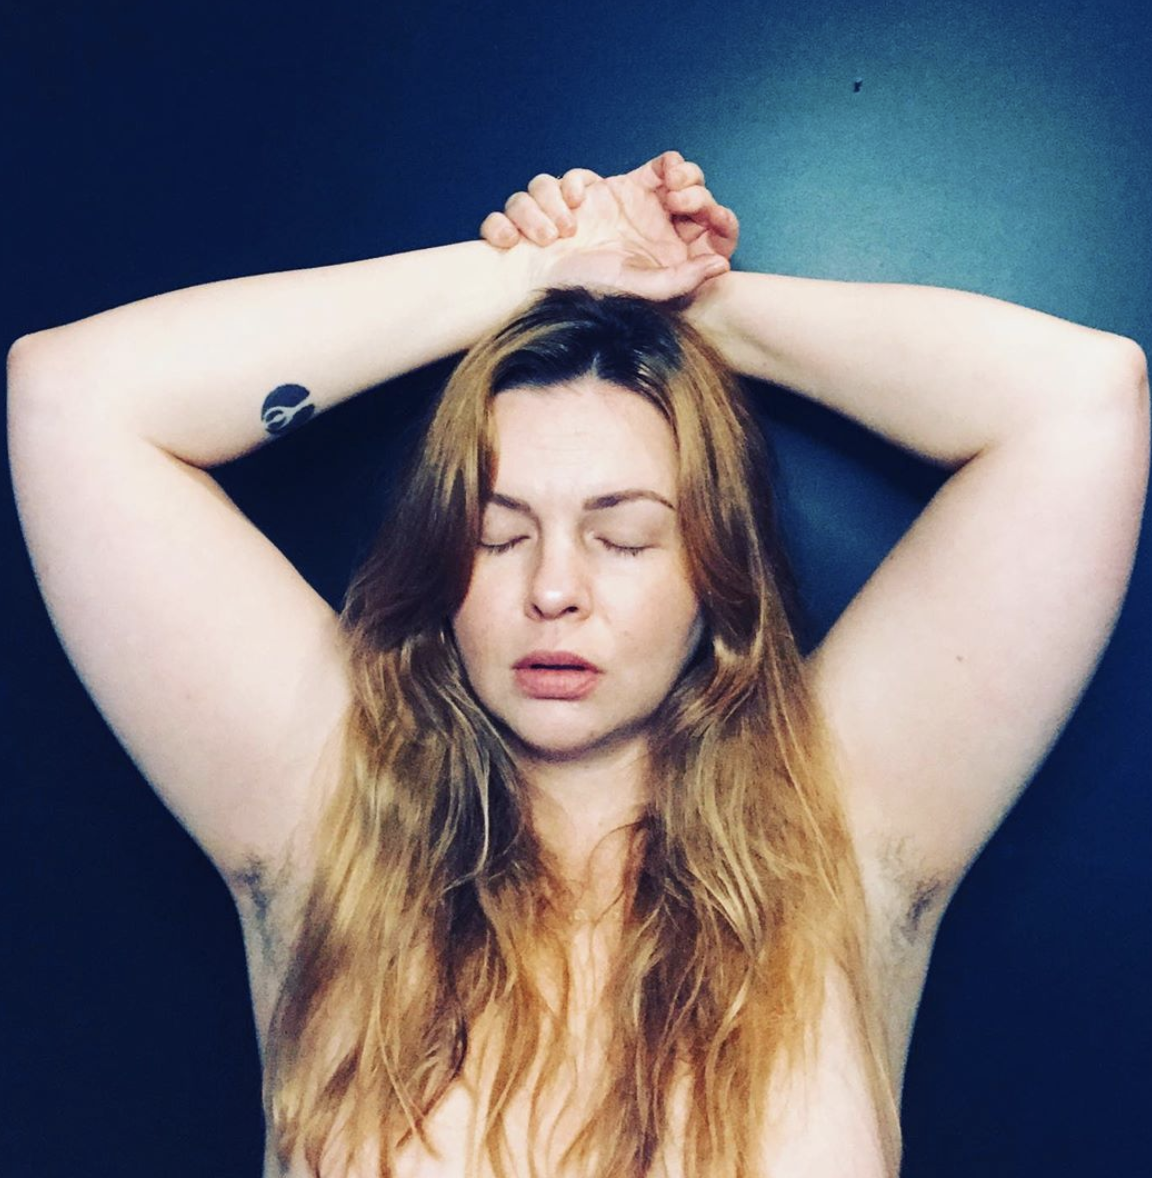 Amber tamblyn nude photos